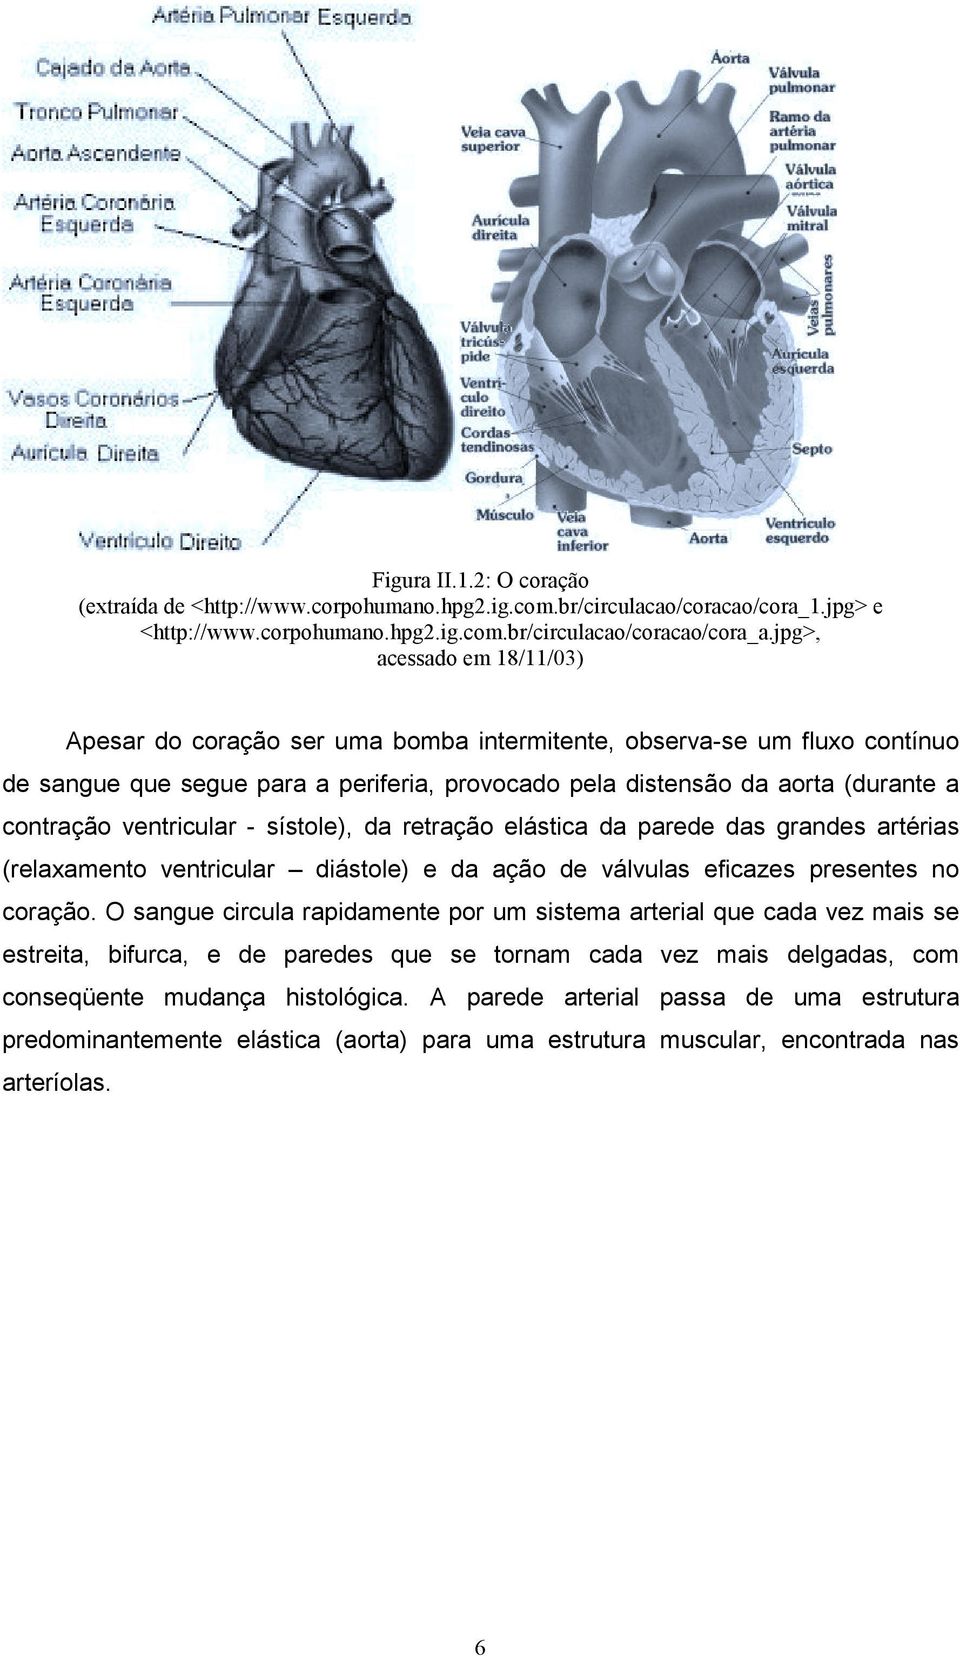 ventricular - sístole), da retração elástica da parede das grandes artérias (relaxamento ventricular diástole) e da ação de válvulas eficazes presentes no coração.